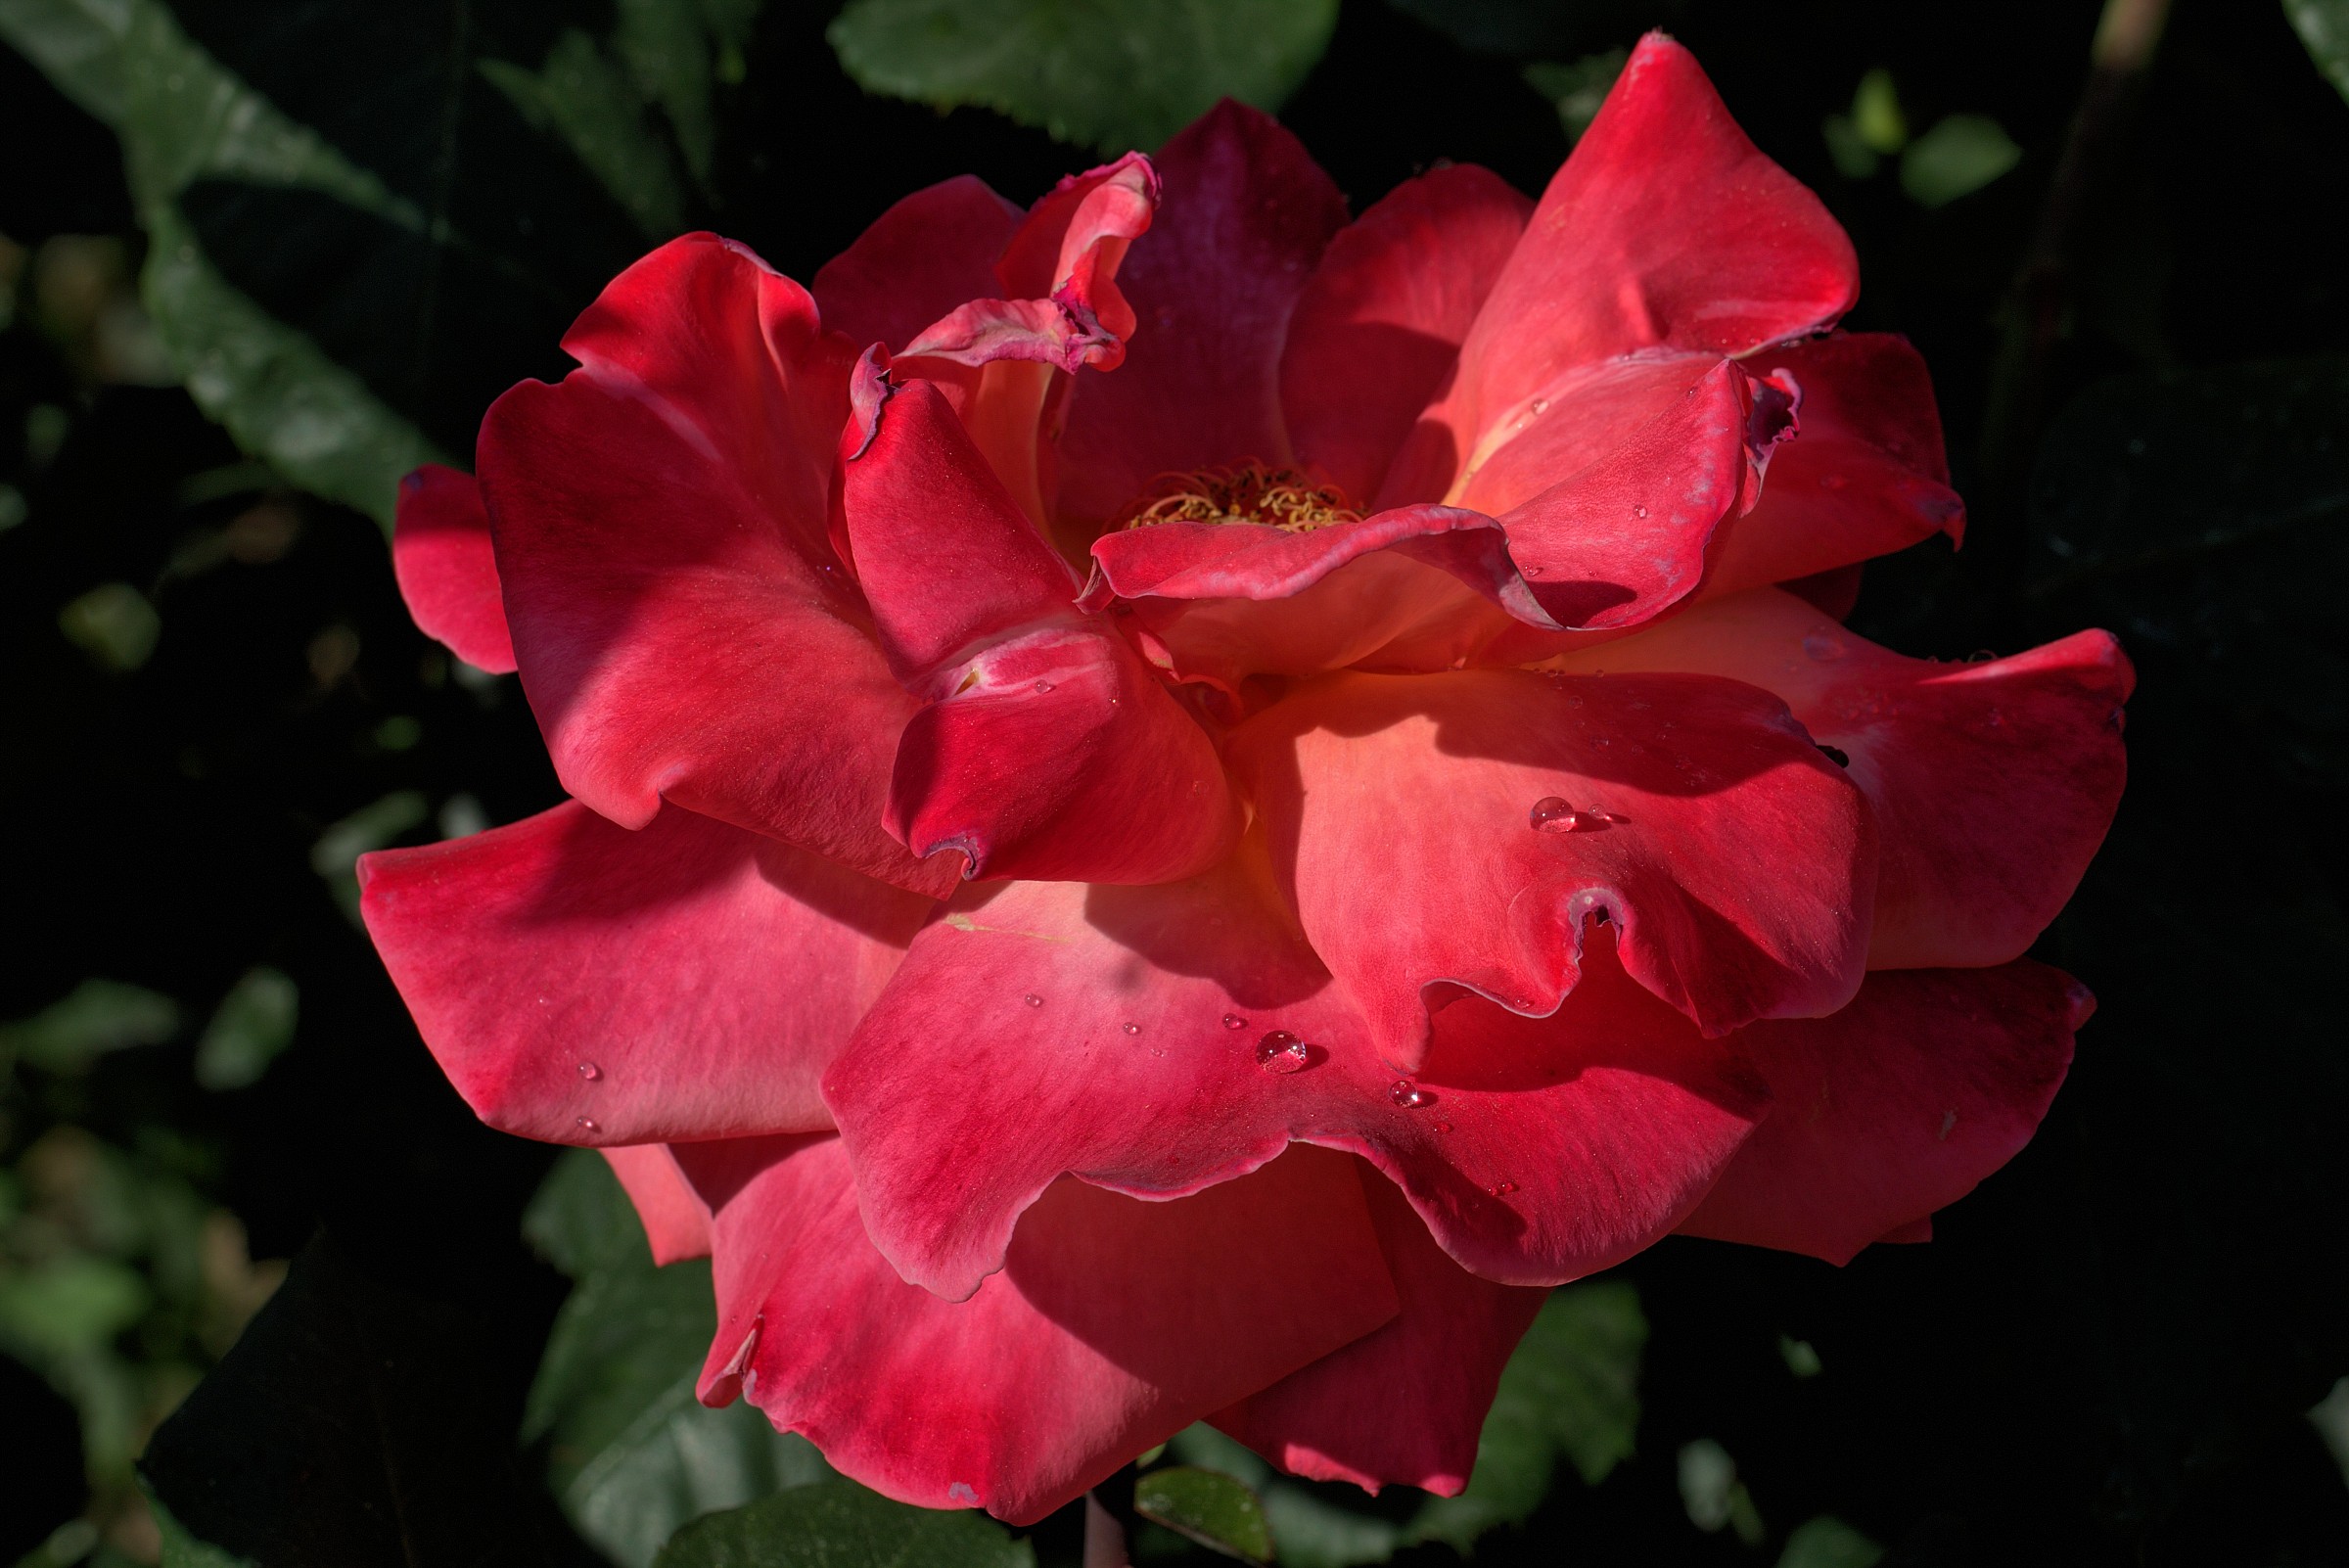 Rose Garden of Nervi...